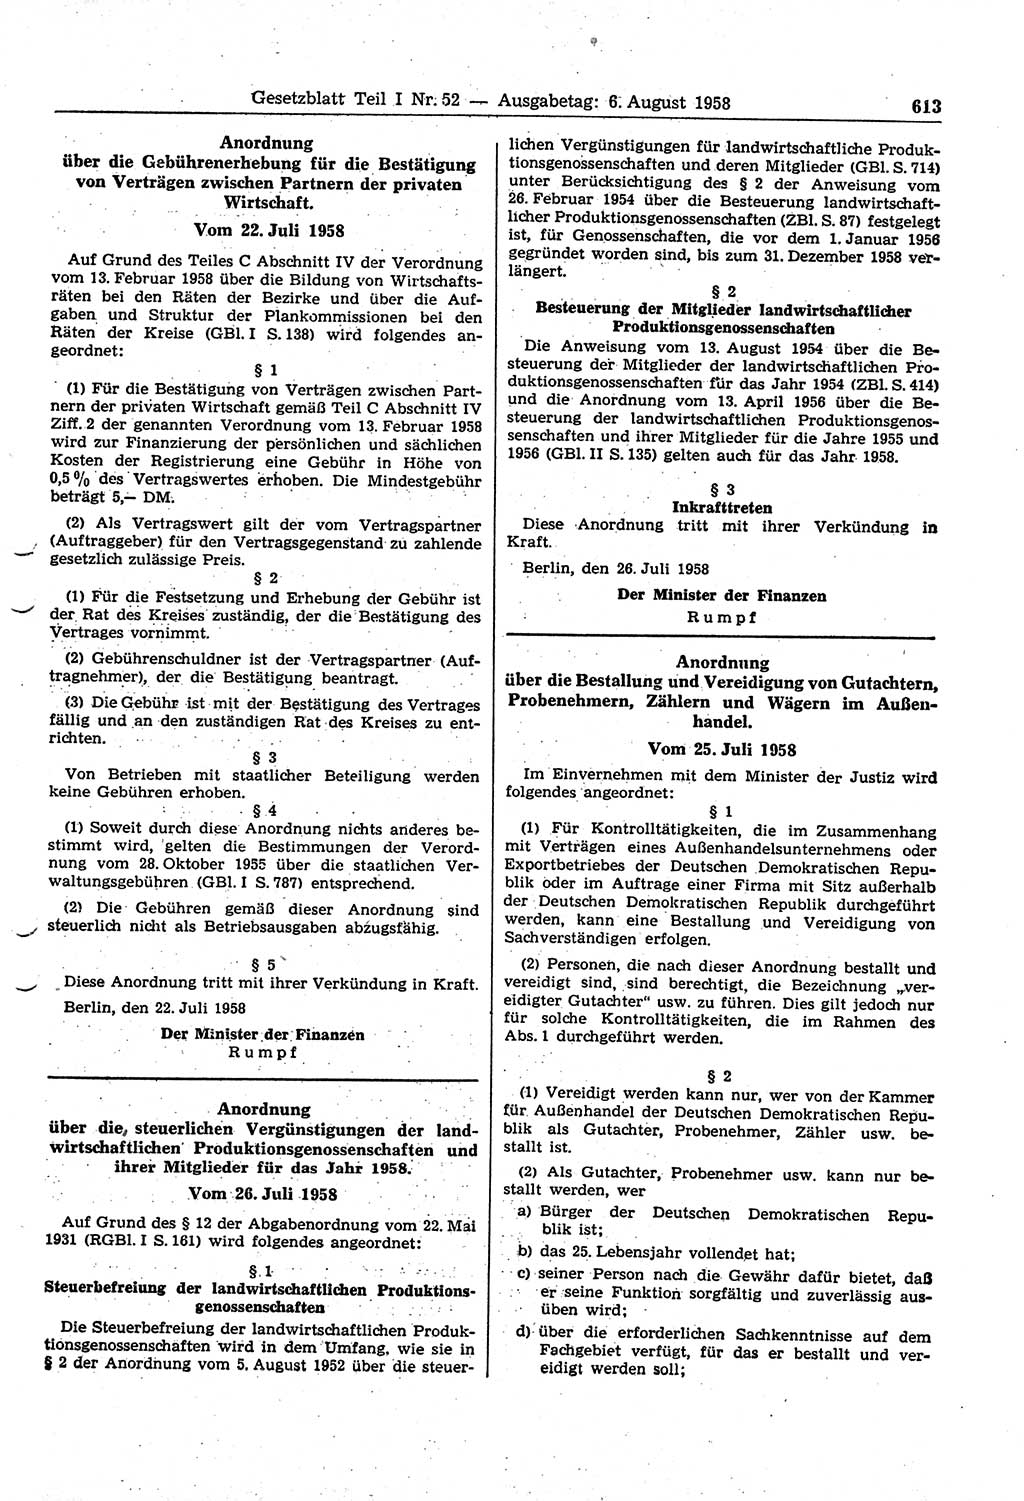 Gesetzblatt (GBl.) der Deutschen Demokratischen Republik (DDR) Teil Ⅰ 1958, Seite 613 (GBl. DDR Ⅰ 1958, S. 613)